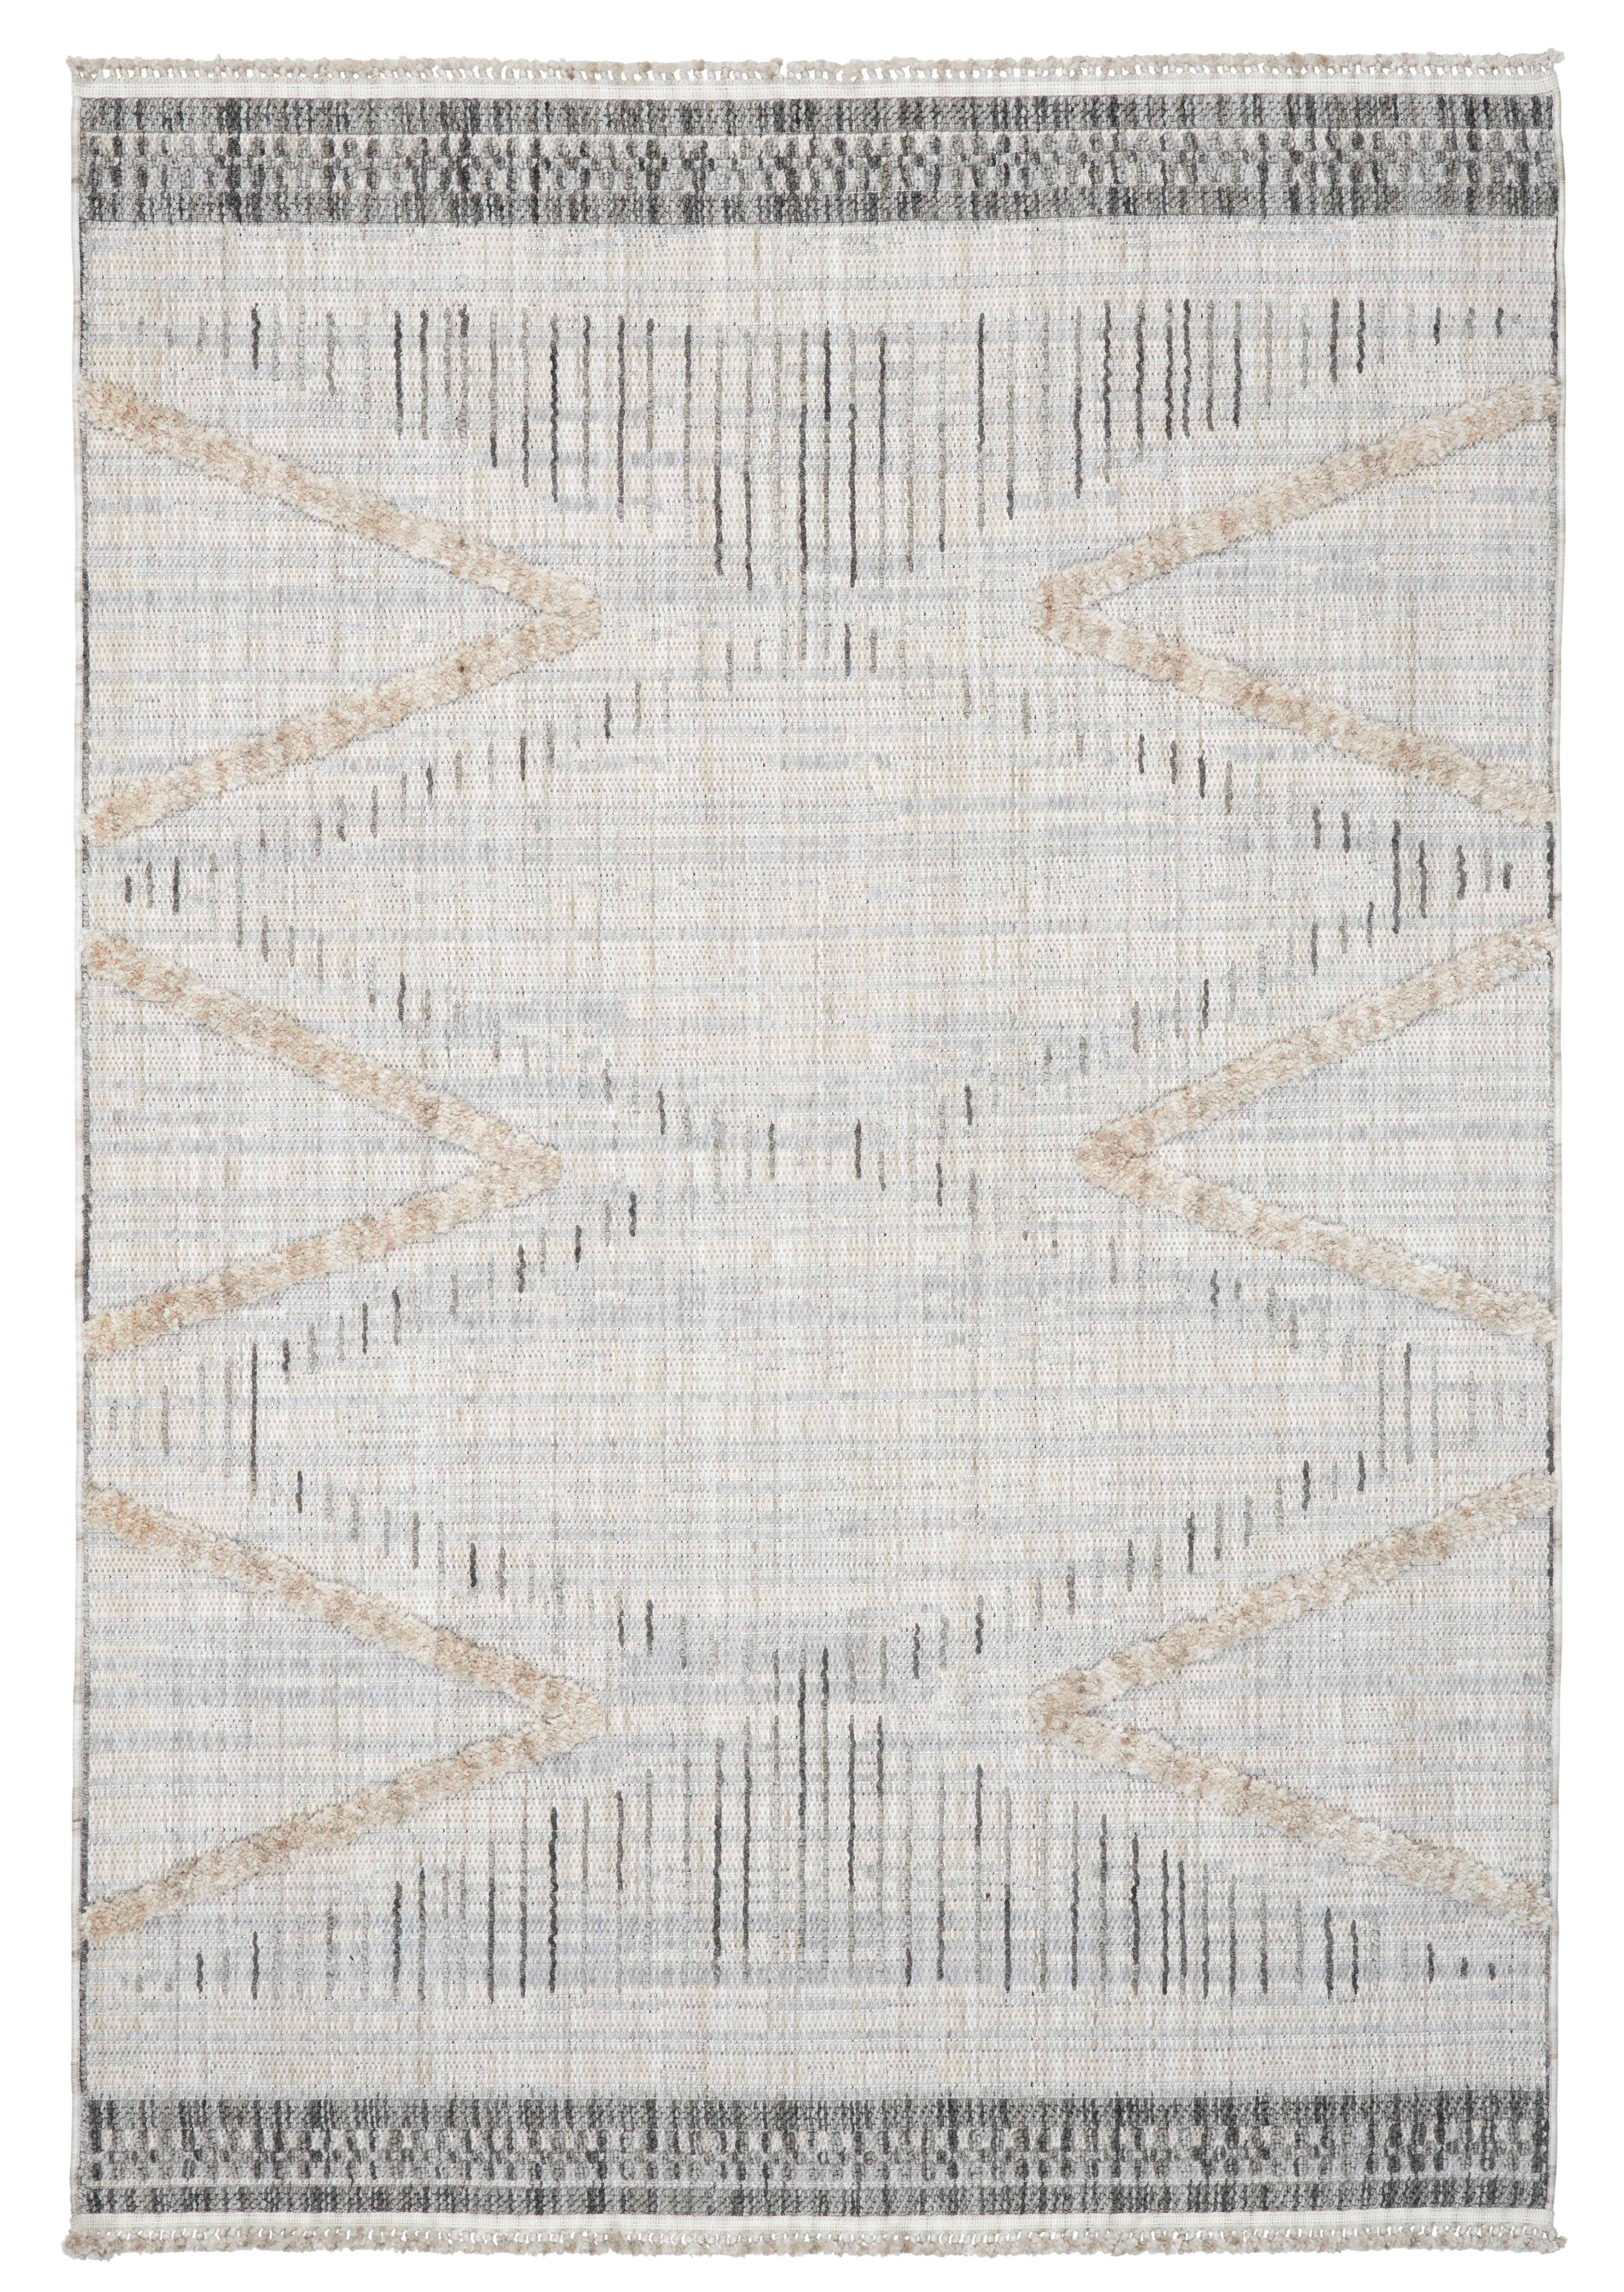 Síkszövött Szőnyeg Valencia 80/150cm - Antracit/Szürke, modern, Textil (80/150cm) - Modern Living